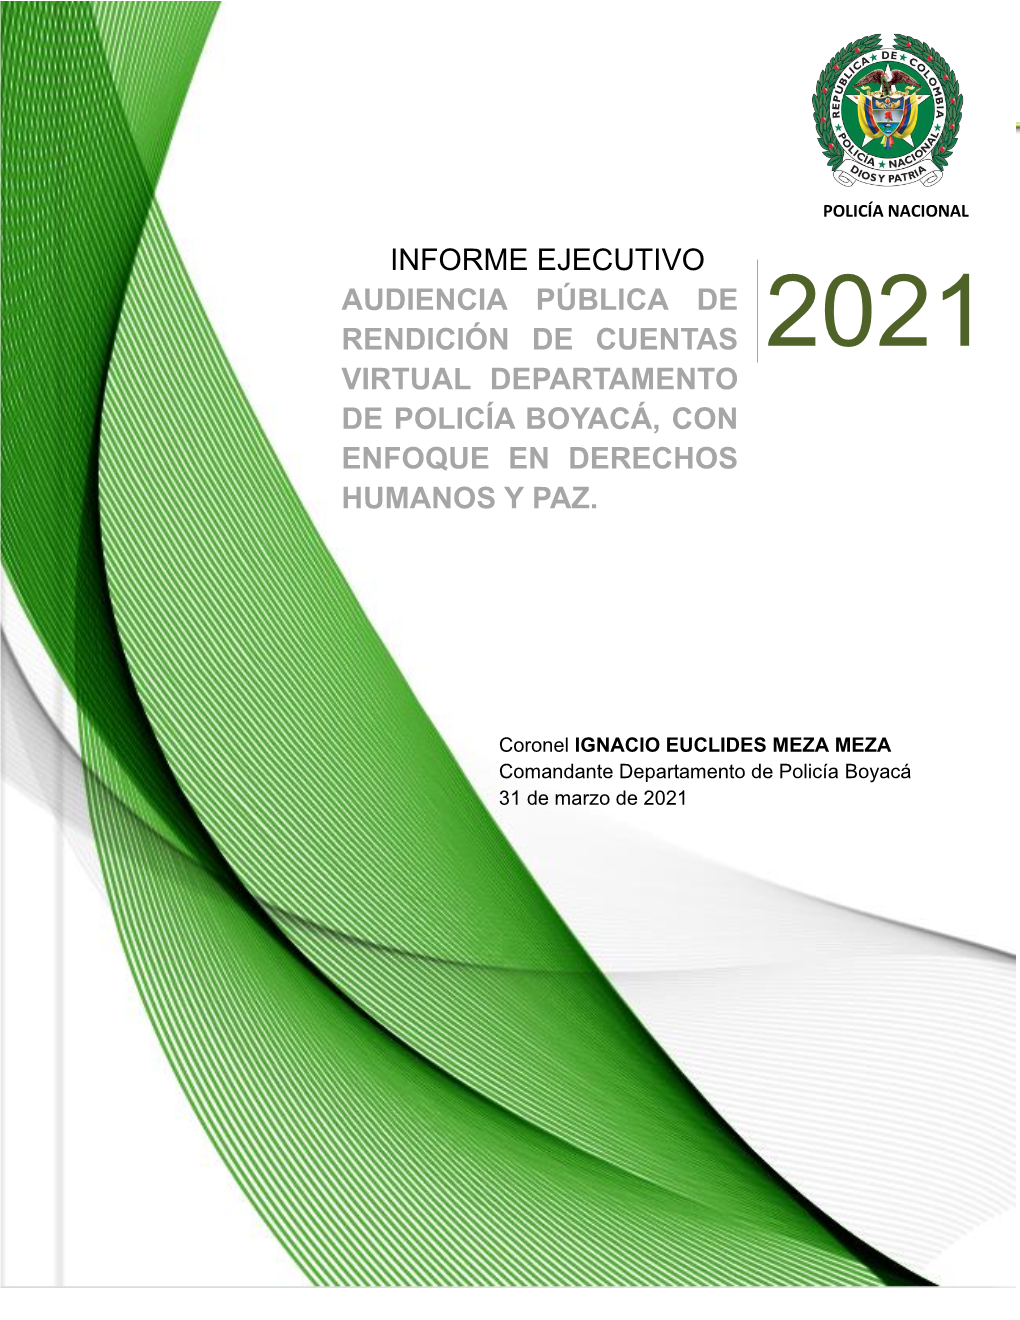 Informe Ejecutivo Audiencia Pública De Rendición De Cuentas 2021 Virtual Departamento De Policía Boyacá, Con Enfoque En Derechos Humanos Y Paz